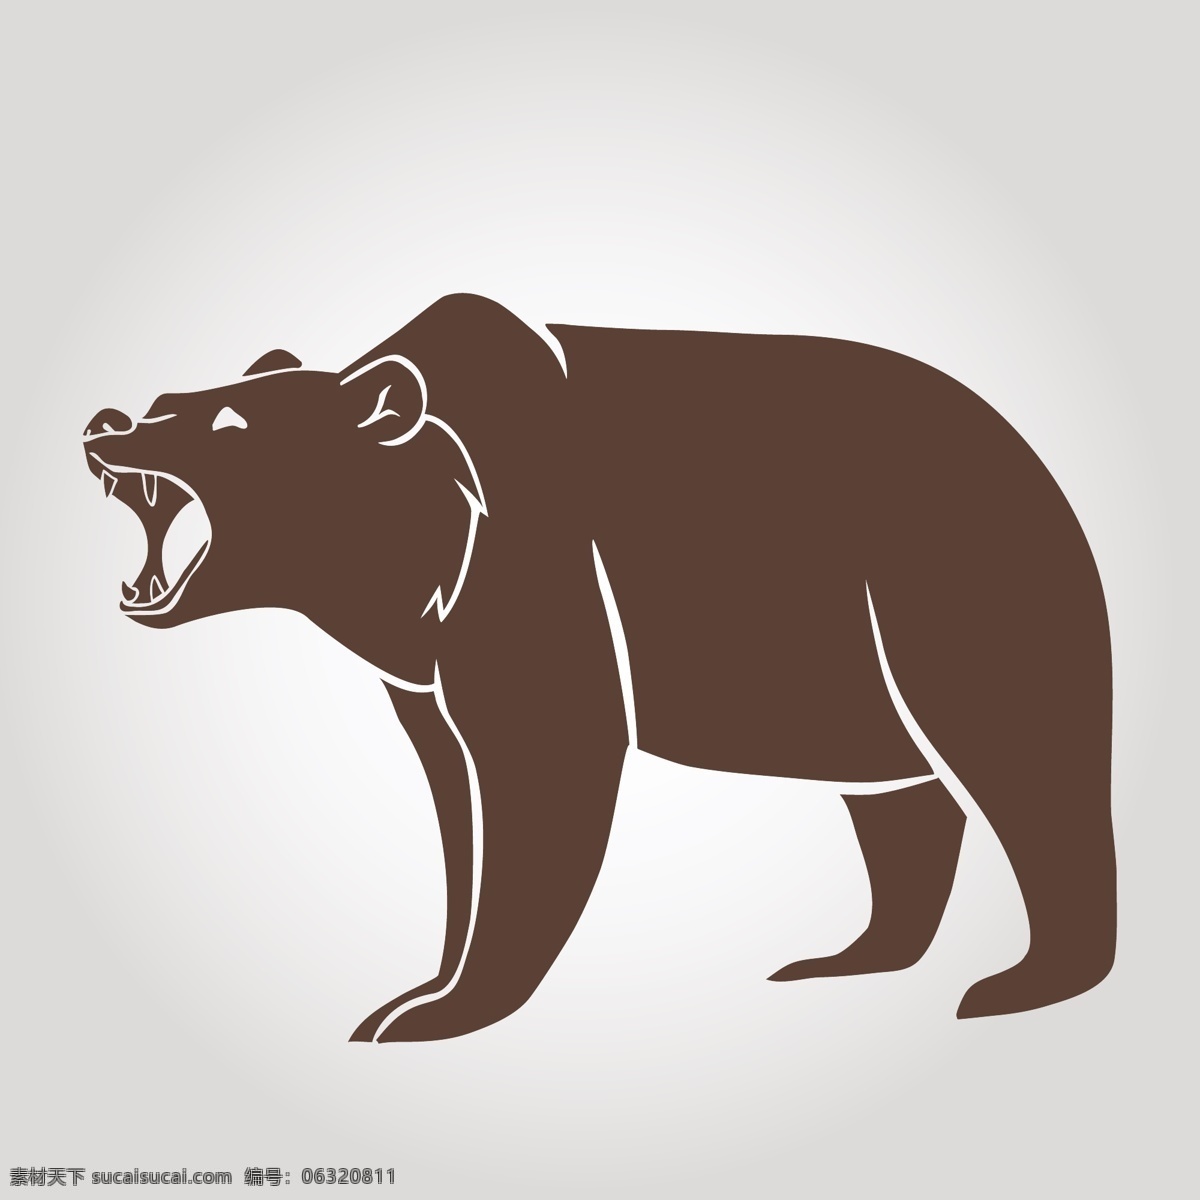 小熊 熊 灰熊 动物 棕熊 可爱动物 熊图标 熊标志 野生动物 生物世界